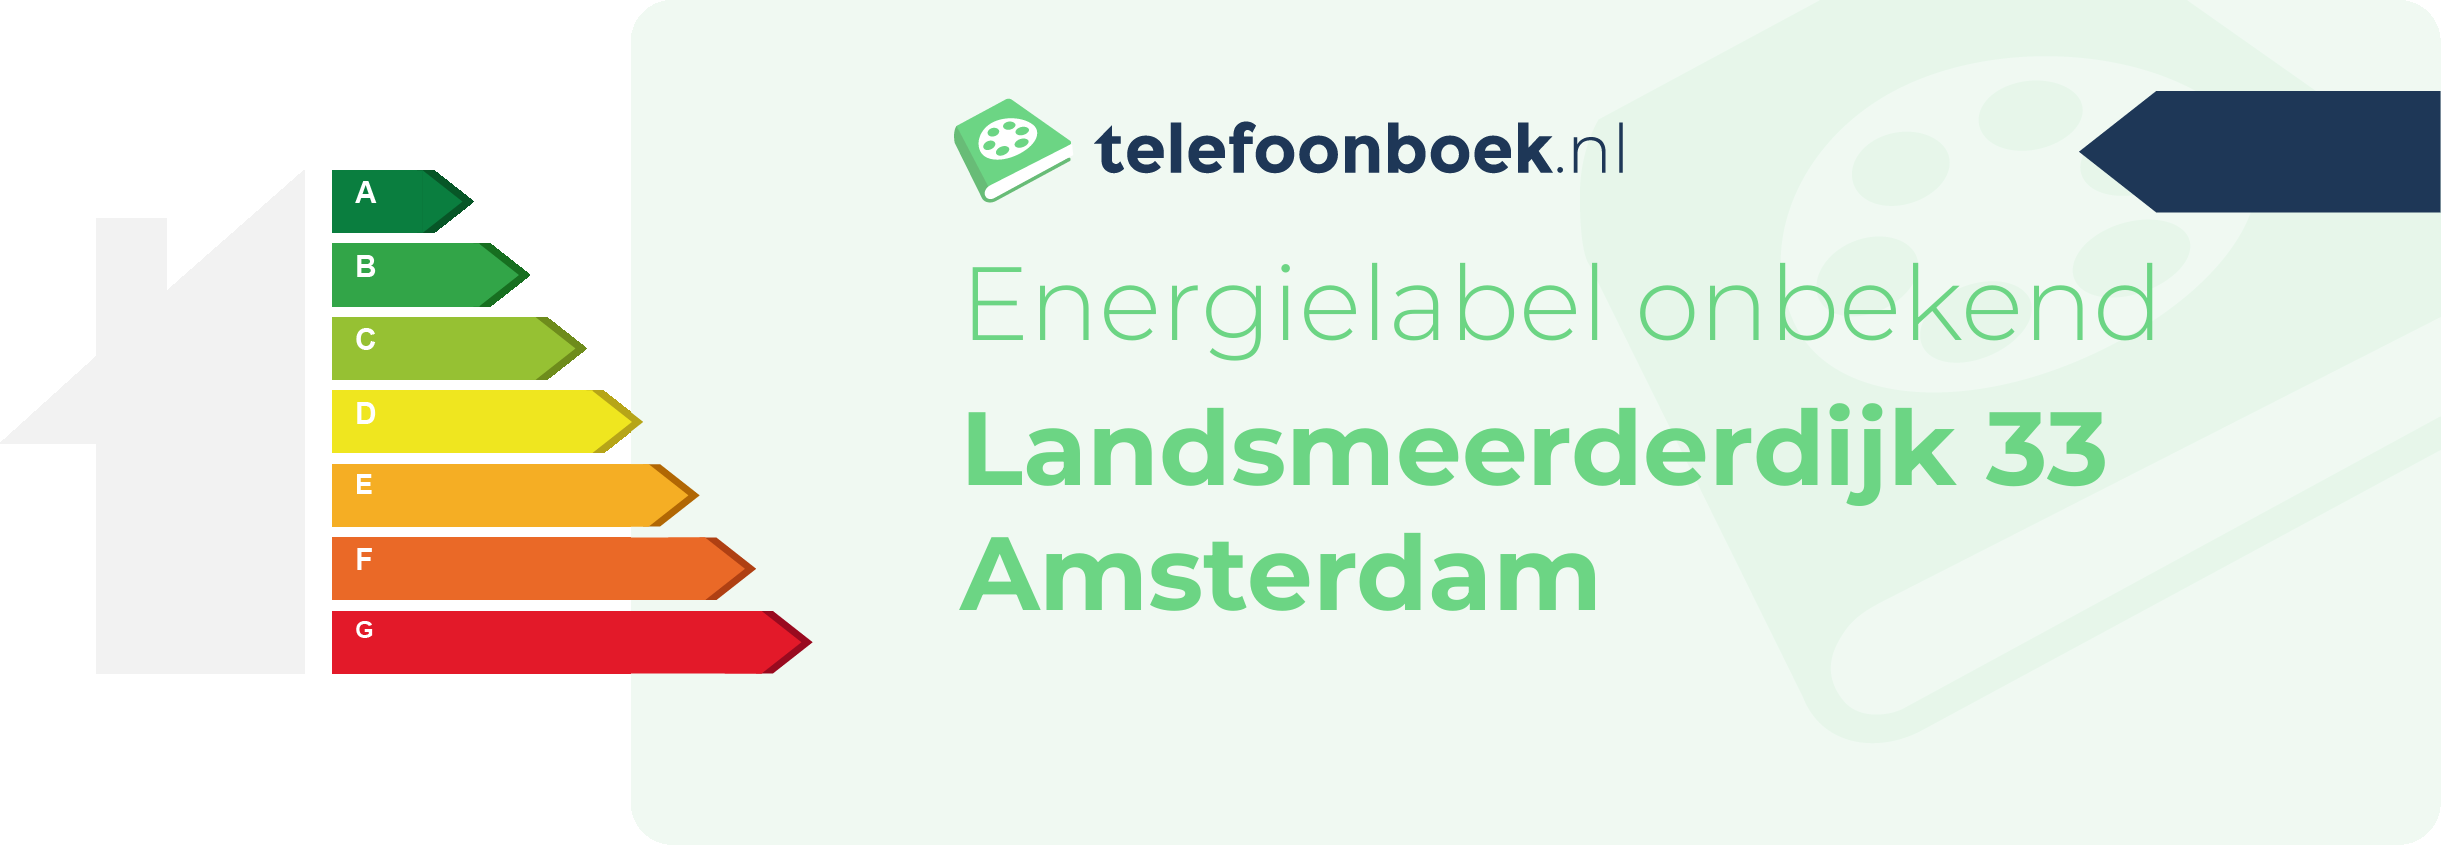 Energielabel Landsmeerderdijk 33 Amsterdam